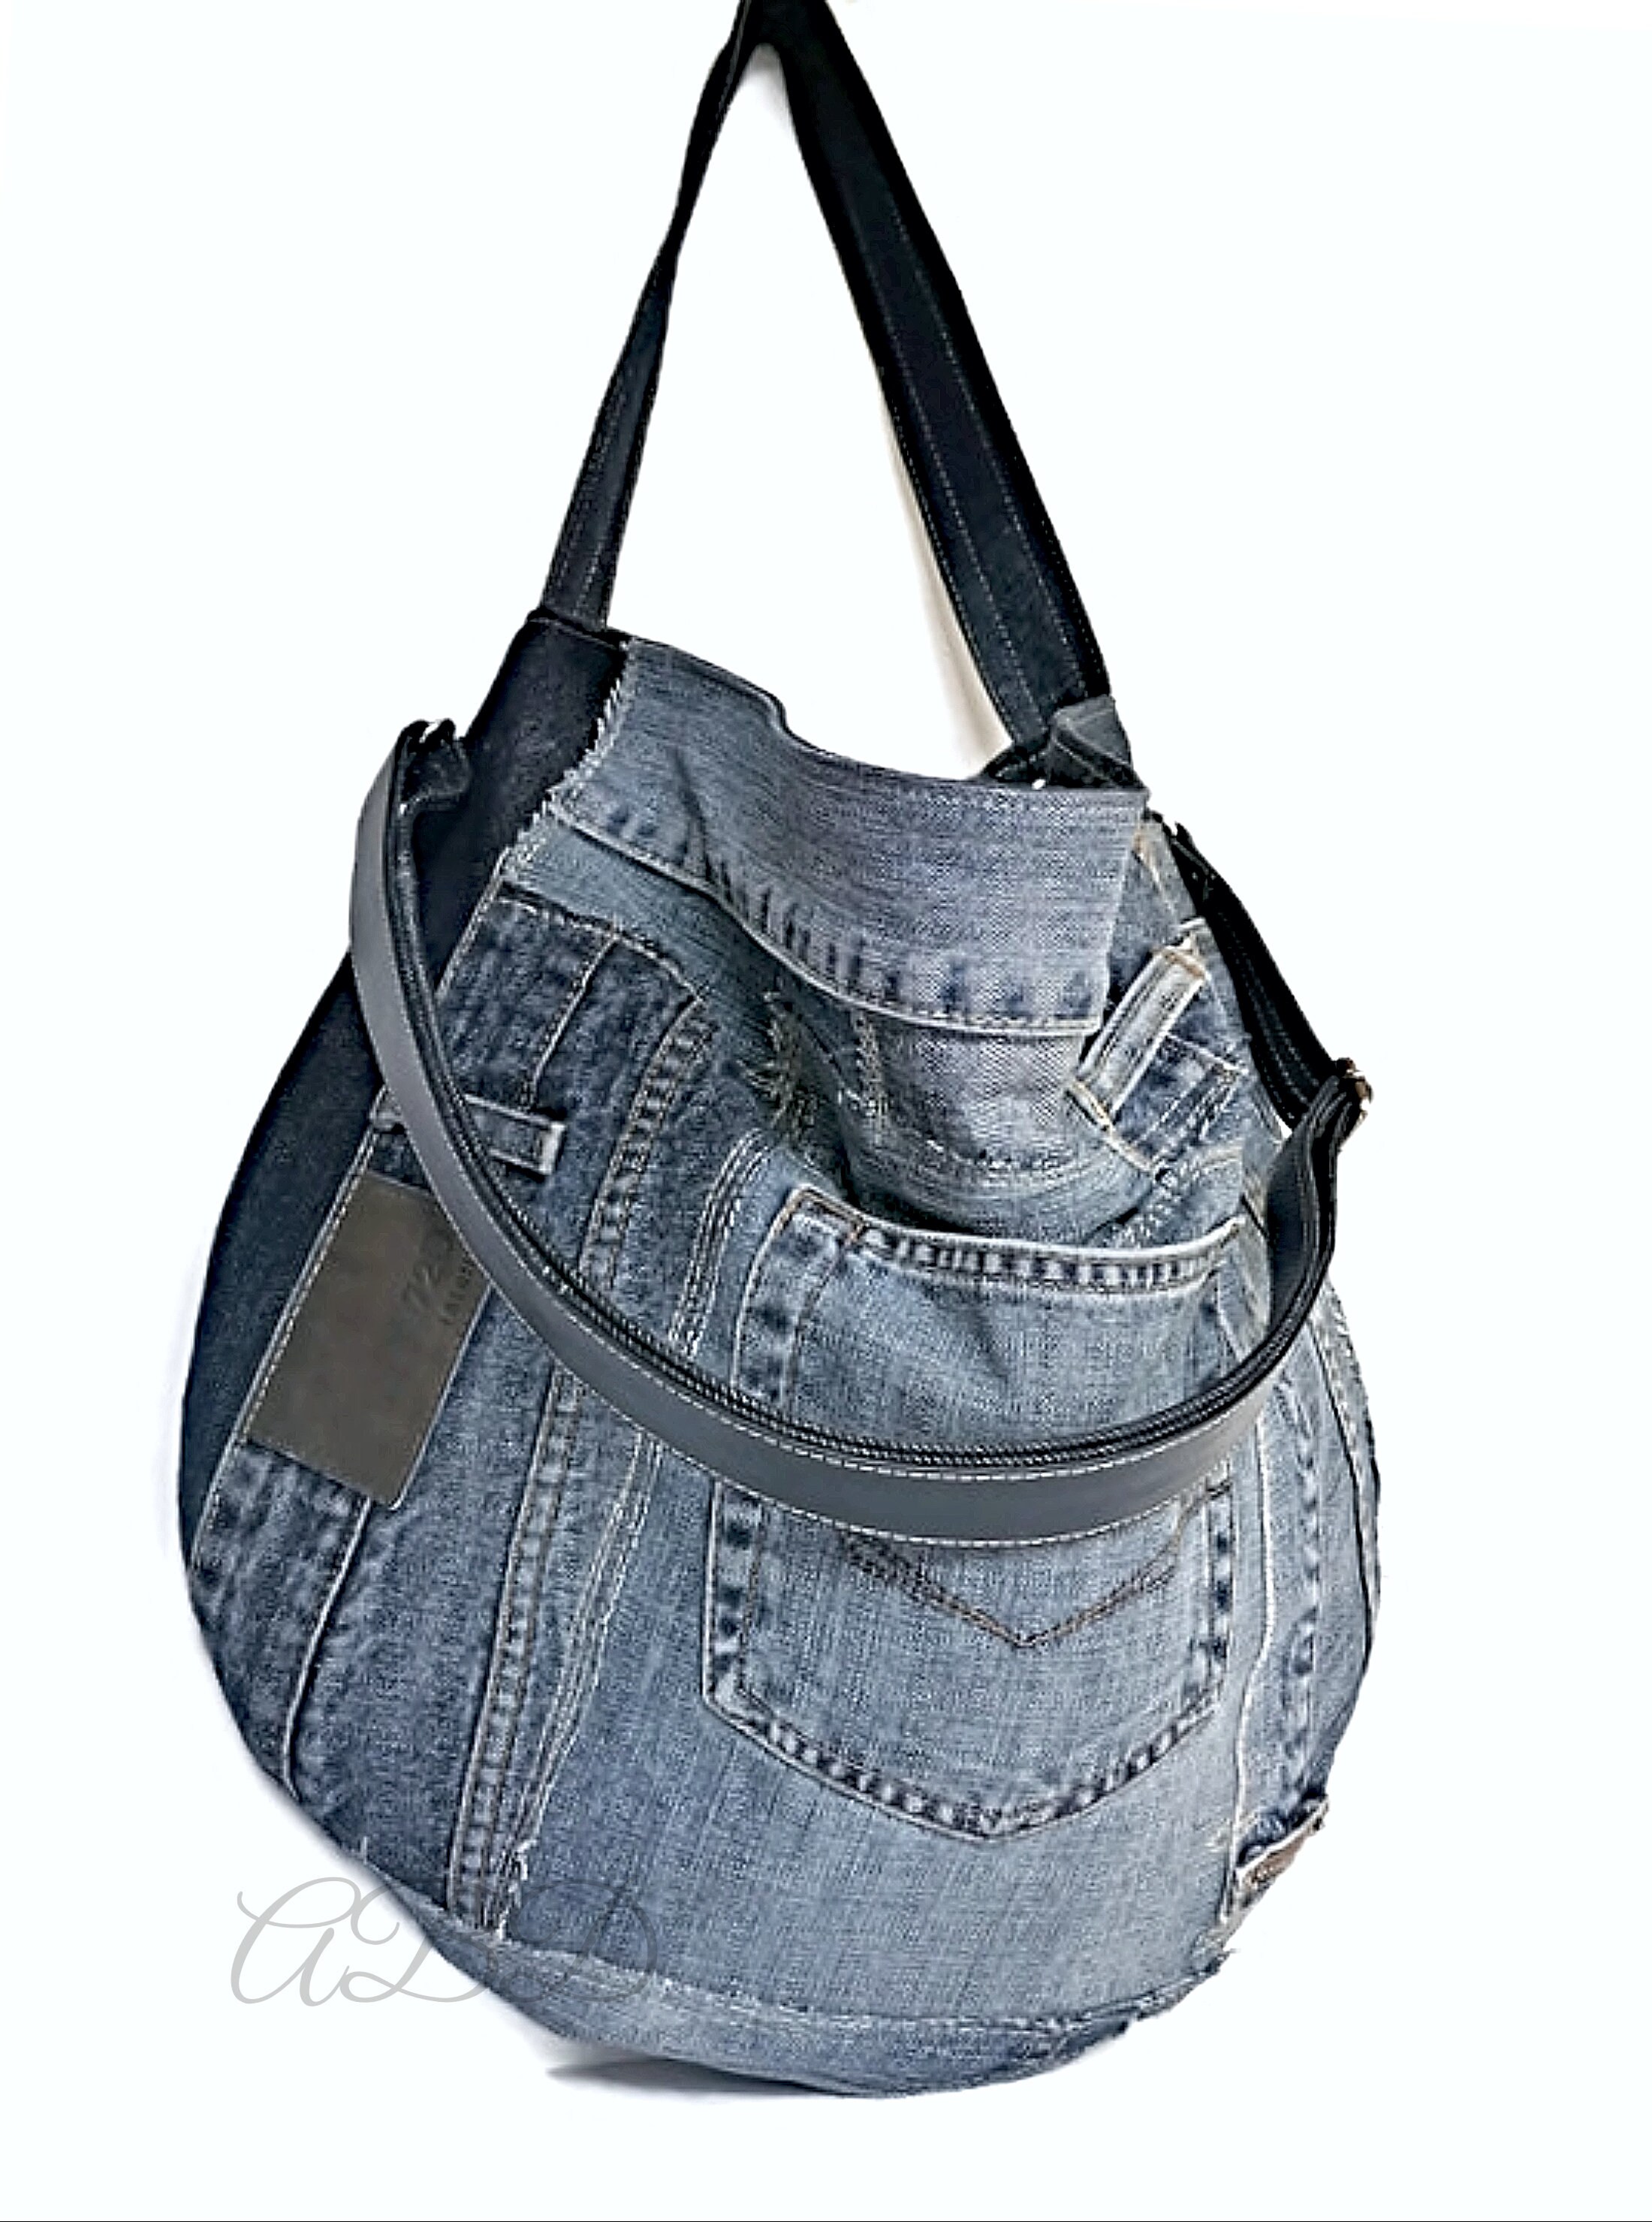 Recycled Jeans Bag Large Denim Bag Jeans Handbag Denim Handbag - Etsy